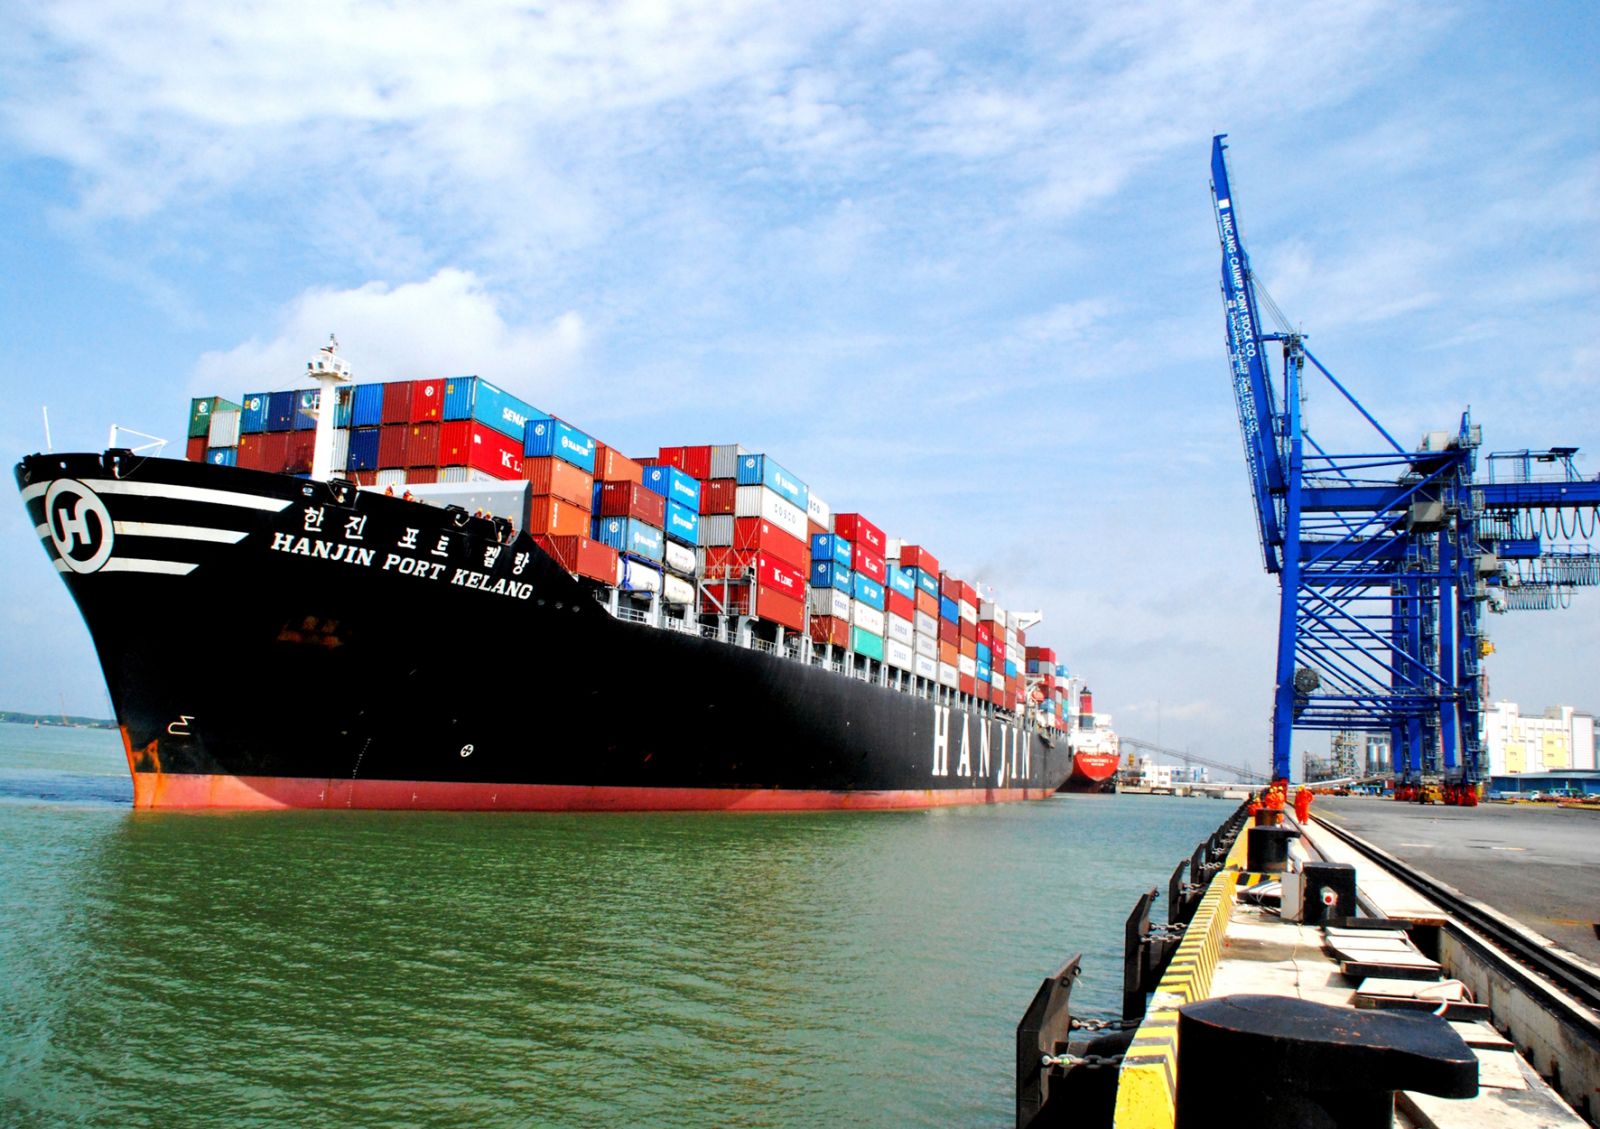 Vận chuyển đường biển thủy hải sản bằng container lạnh từ Việt Nam đến cảng Lat Krabang - Thailand